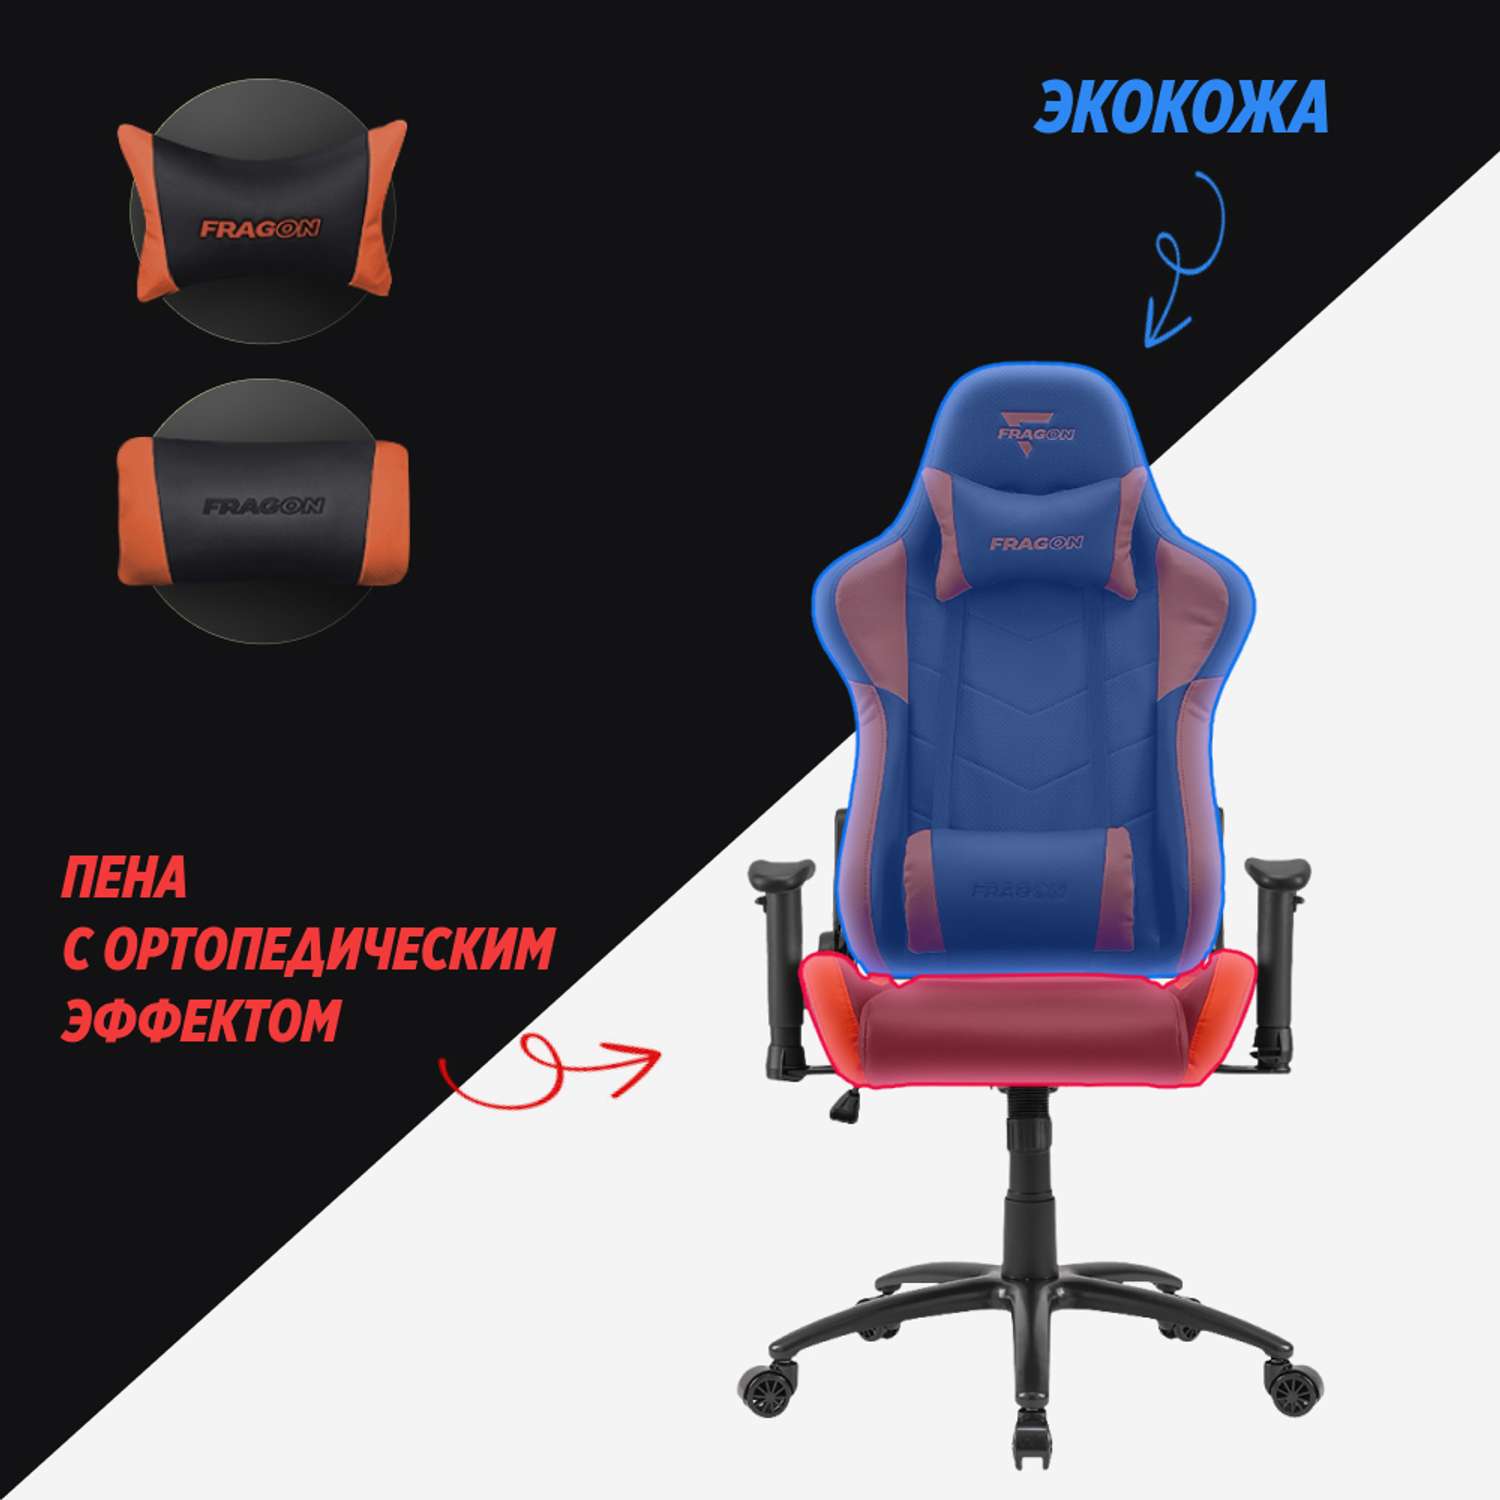 Компьютерное кресло GLHF серия 3X Black/Orange - фото 4